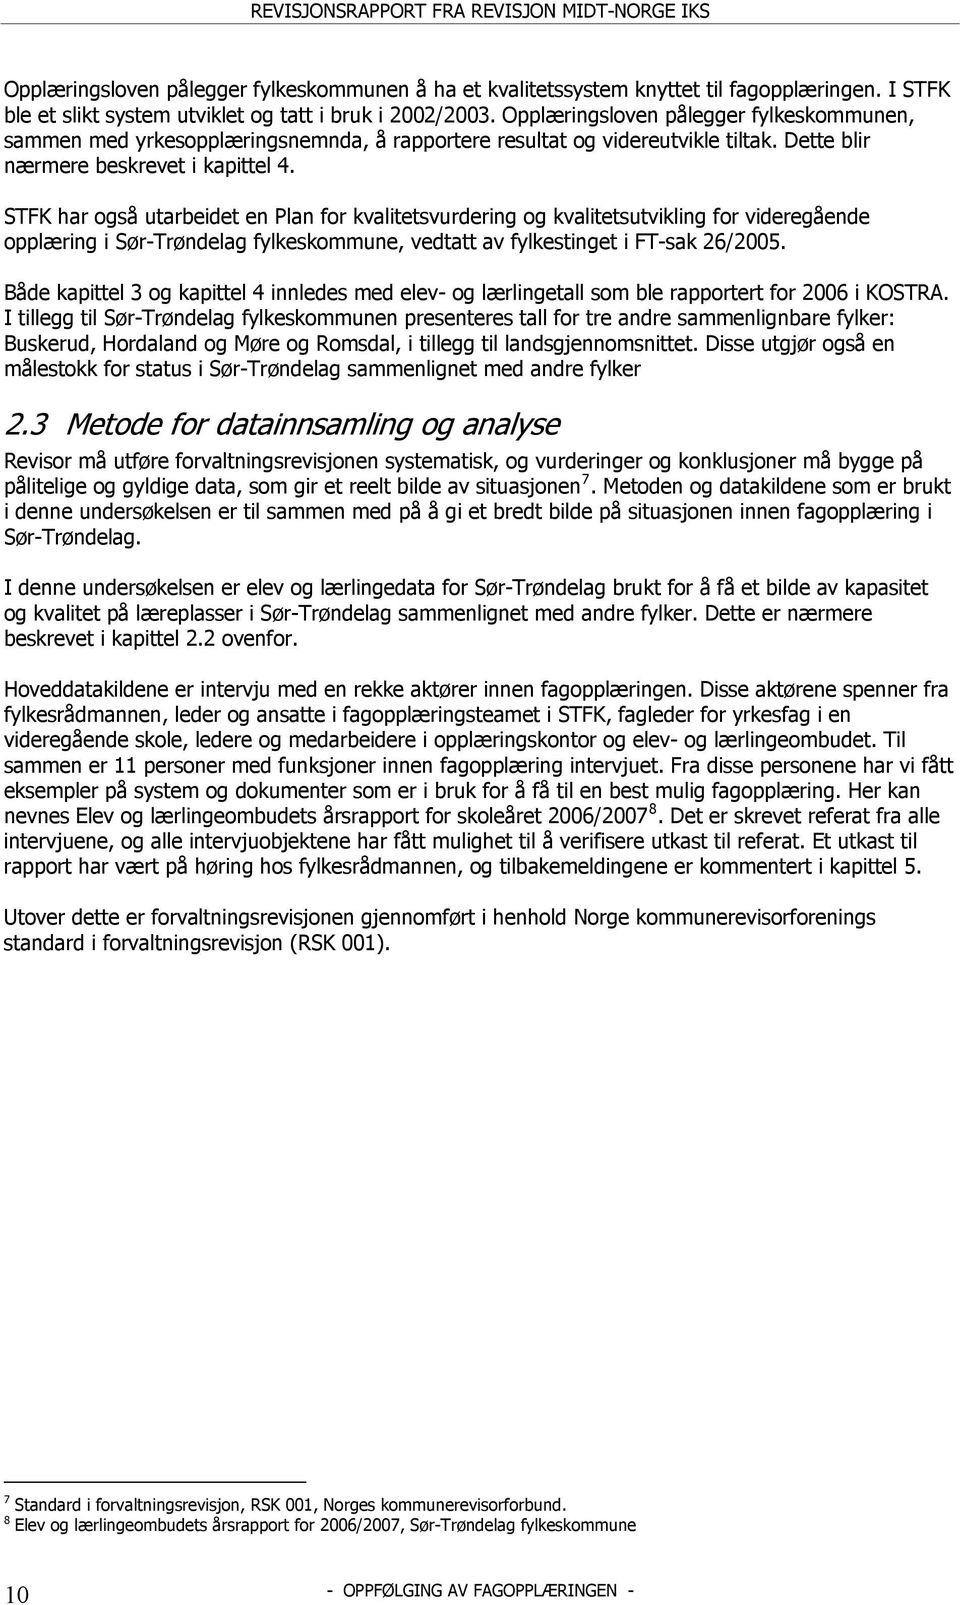 STFK har også utarbeidet en Plan for kvalitetsvurdering og kvalitetsutvikling for videregående opplæring i Sør-Trøndelag fylkeskommune, vedtatt av fylkestinget i FT-sak 26/2005.